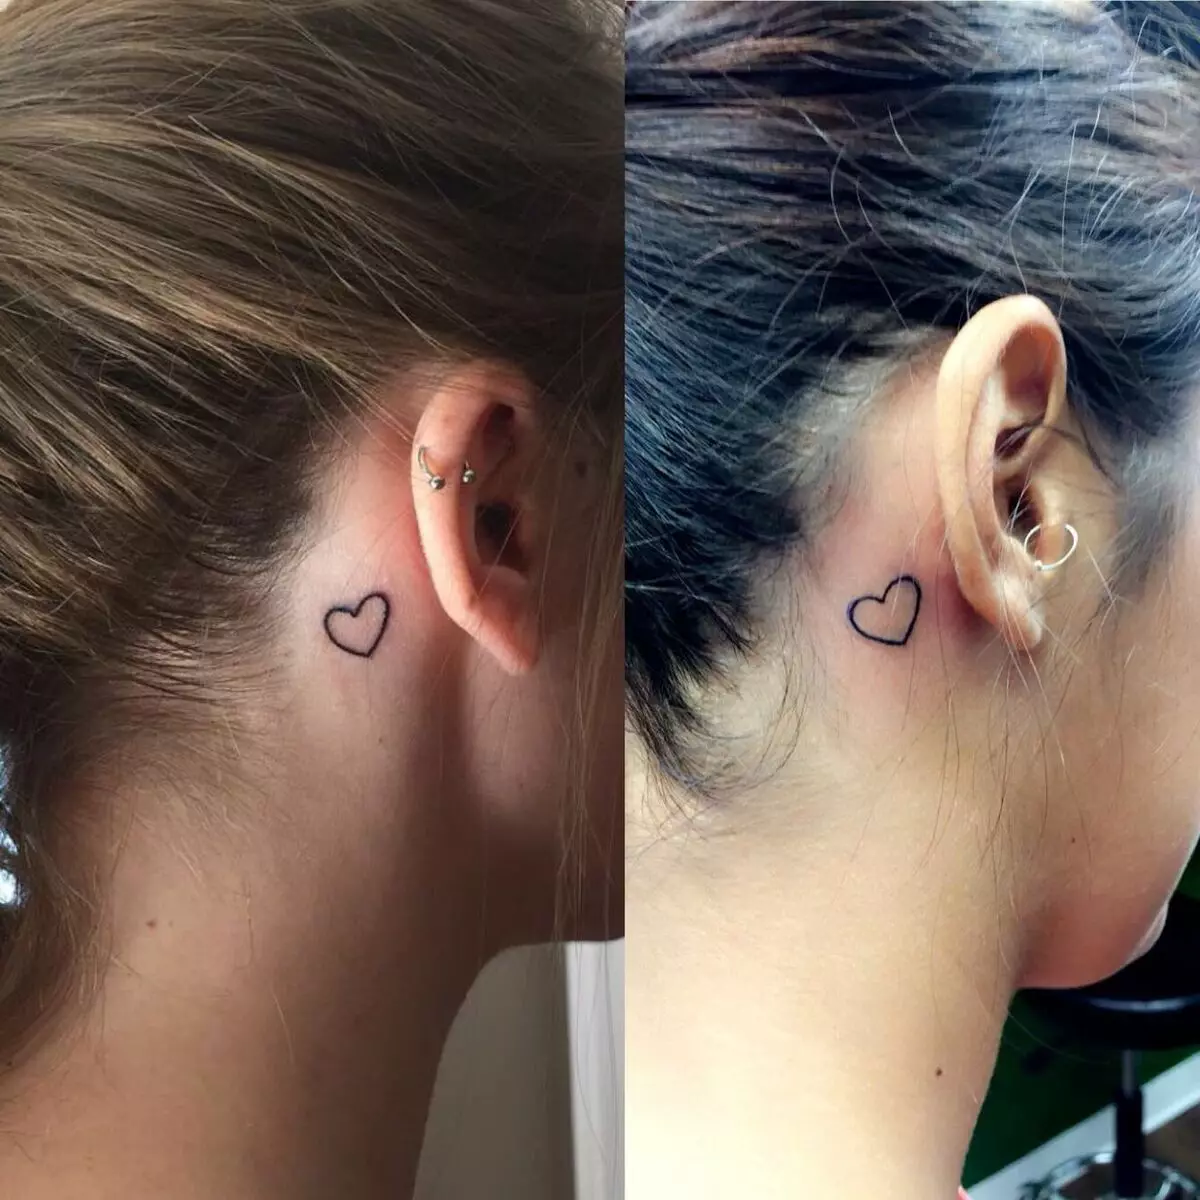 लड़कियों के लिए कान के पीछे टैटू (3 9 फोटो): छोटे टैटू के स्केच, महिलाओं के मिनी टैटू का मूल्य, सितारों और शिलालेखों के साथ टैटू, सांप और पंख, अन्य विकल्प 14190_10